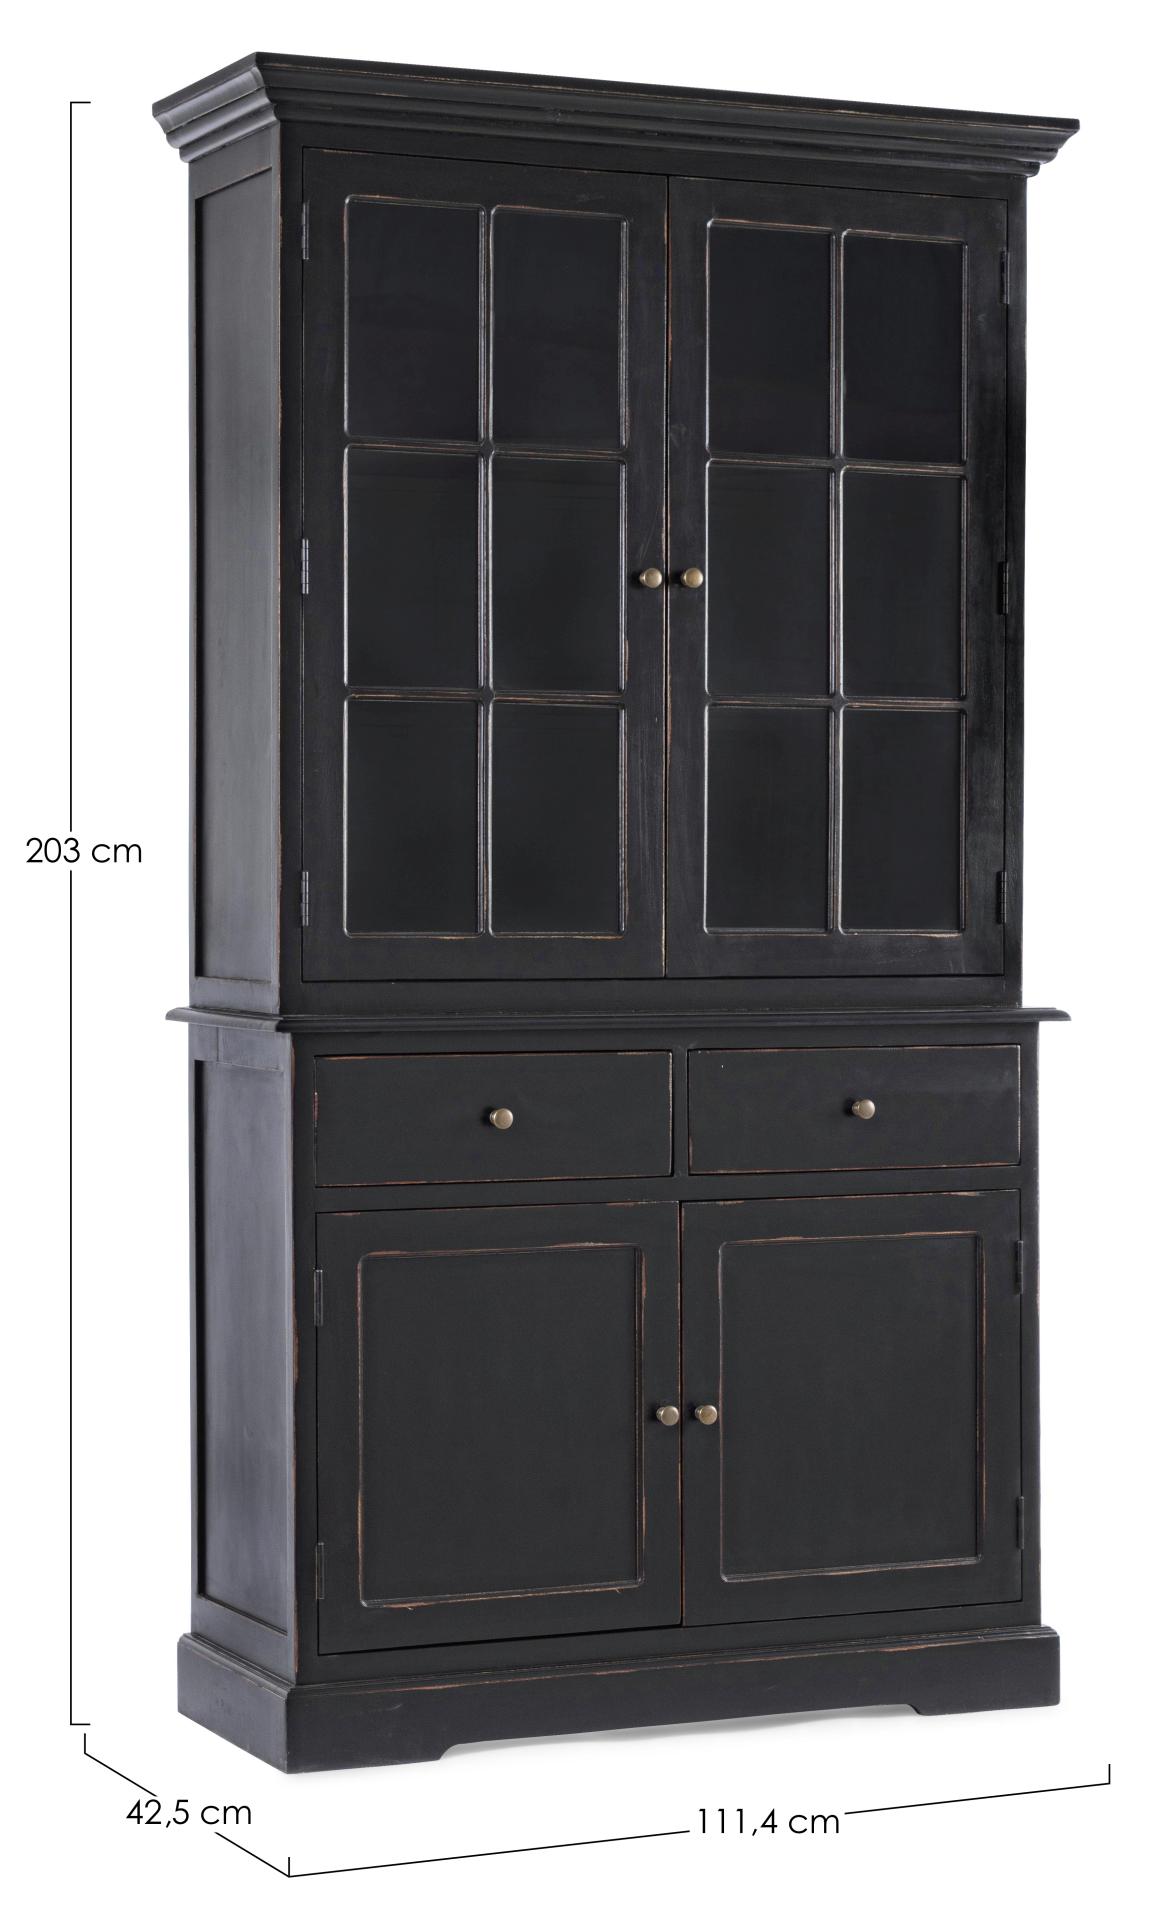 Die Vitrine Jefferson überzeugt mit ihrem klassischen Design. Gefertigt wurde sie aus Mangoholz, welches einen schwarzen Farbton besitzt. Die Vitrine verfügt über zwei Glastüren, zwei Holztüren und zwei Schubladen mit ausreichend Stauraum im inneren. Die 